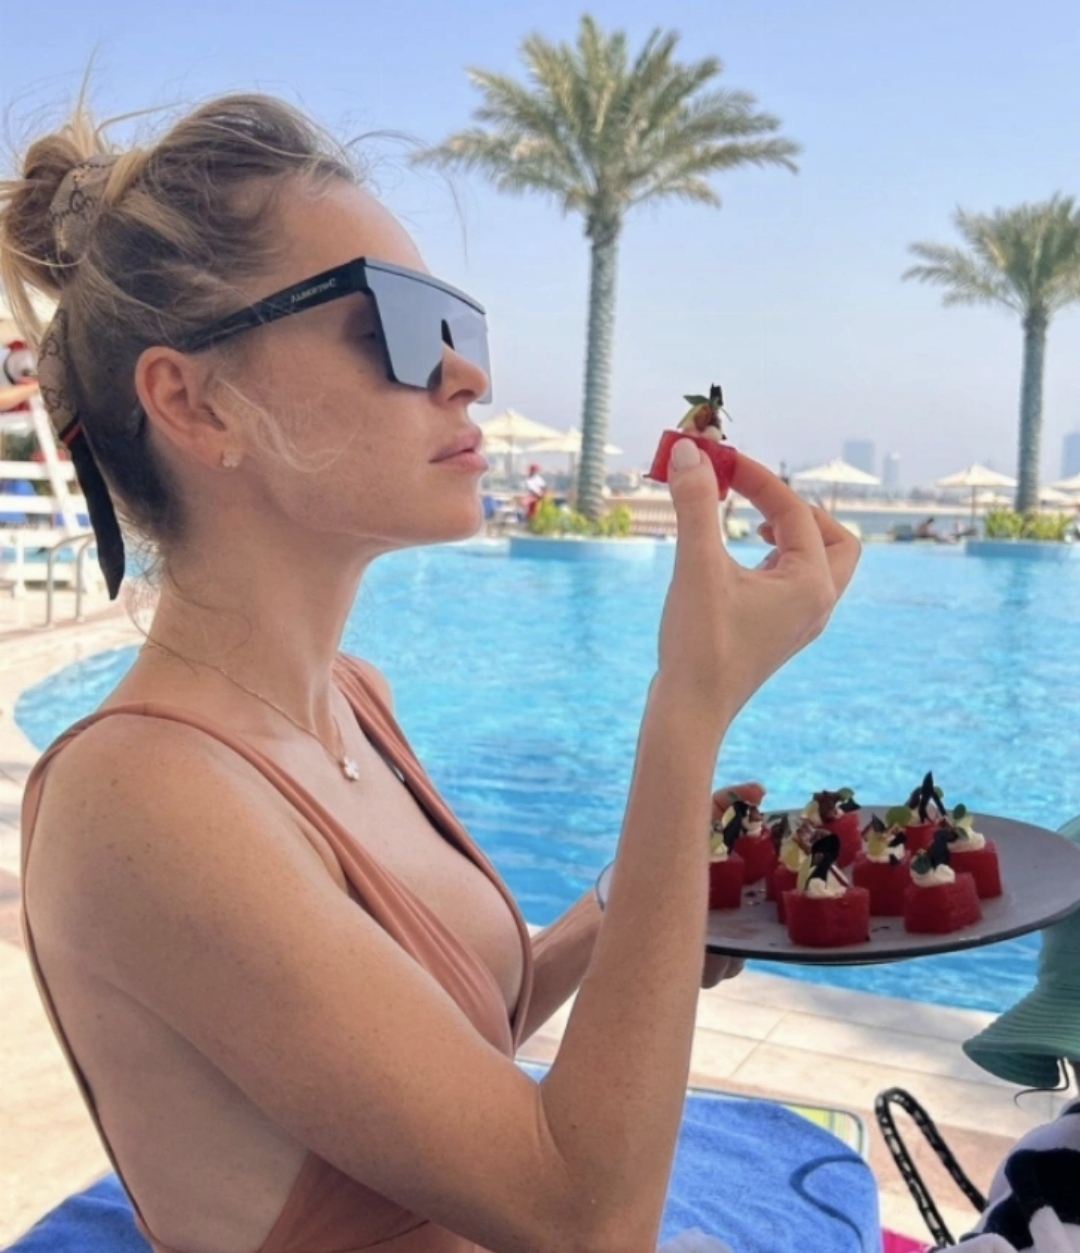 Анна Хилькевич разгуливает по отелю Дубаи в купальнике с эффектом "голой кожи"